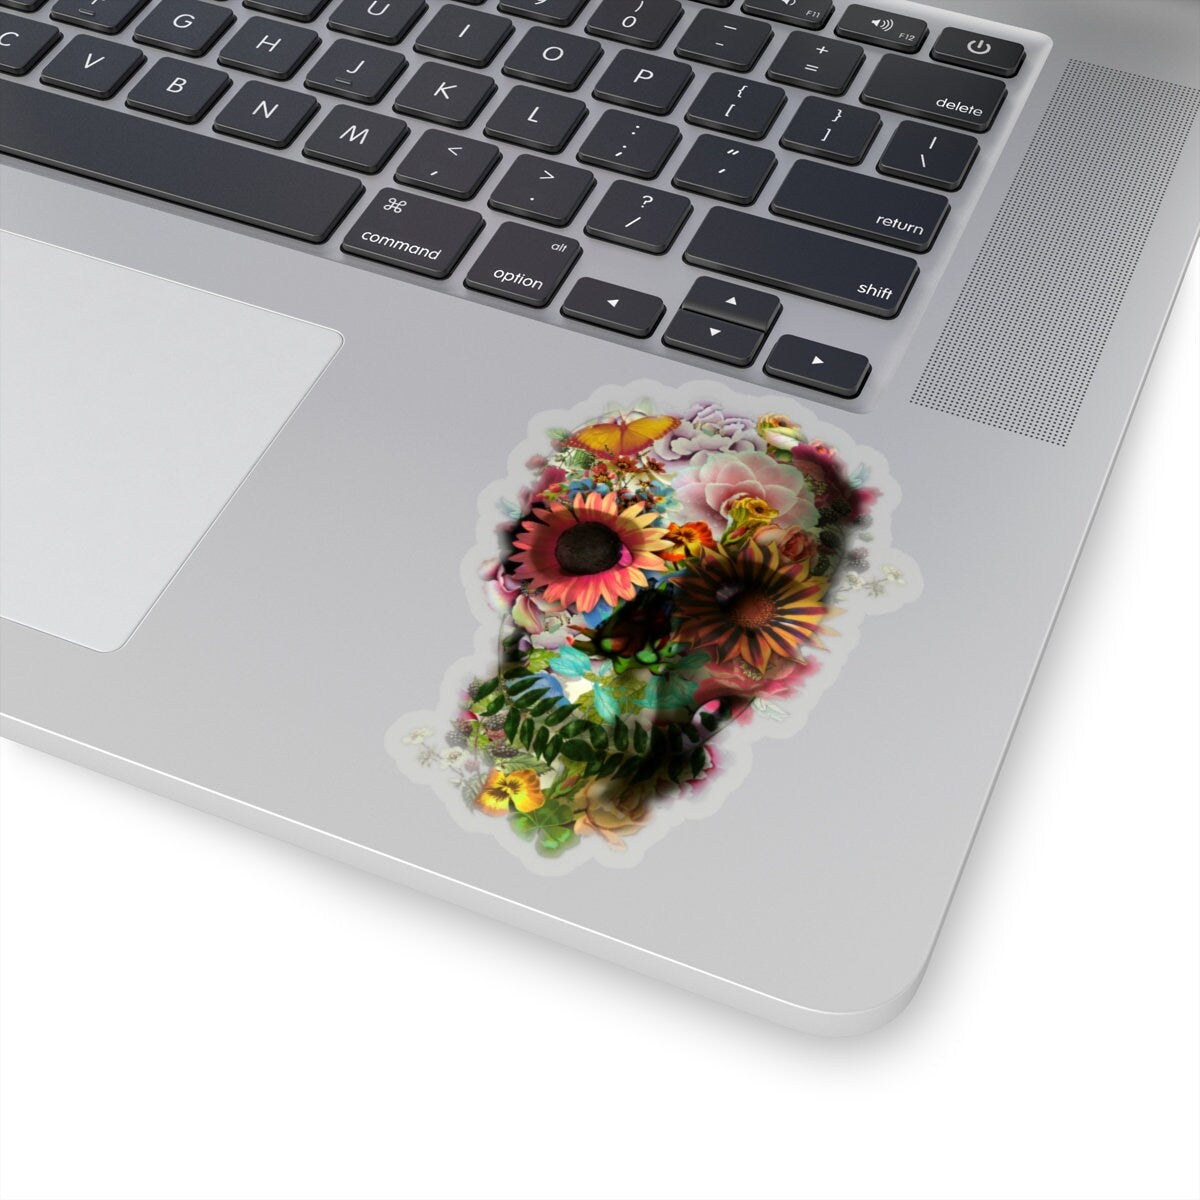 Flower Skull Sticker, Floral Skull Laptop Sticker, Sugar Skull Bubble-free Sticker, Nature Gothic Sugar Skull Art Print Sticker